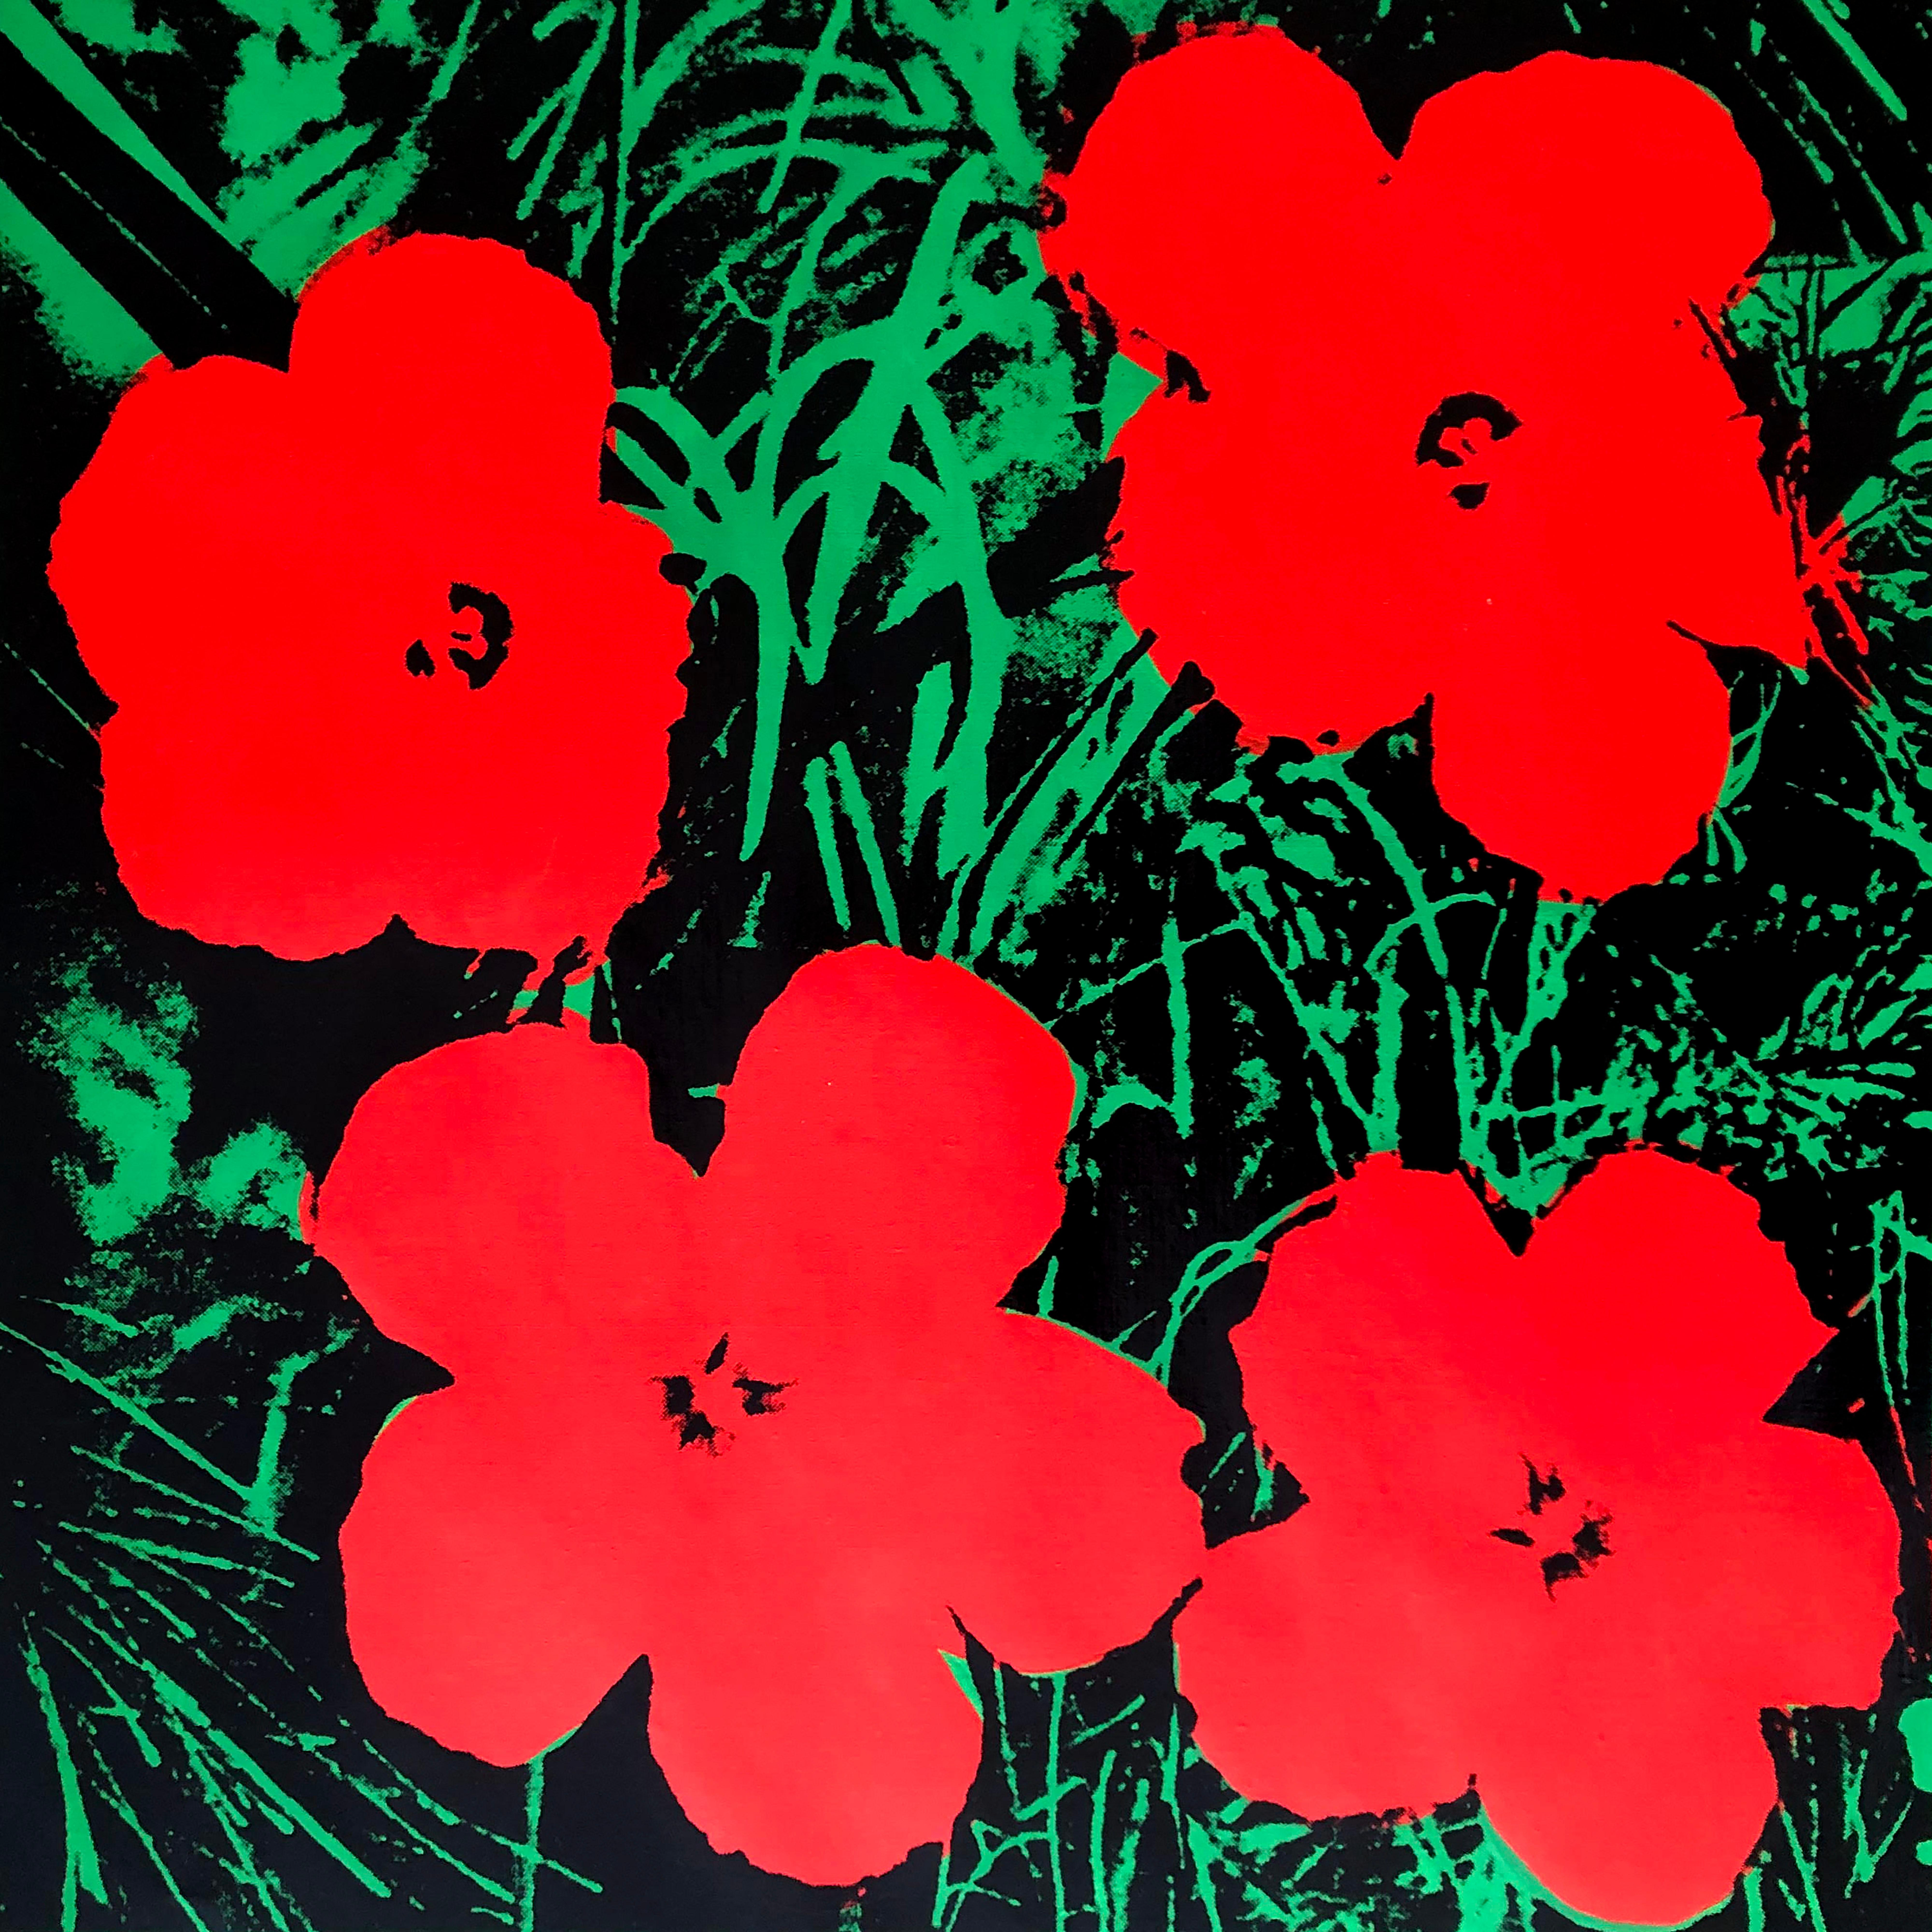 Verweigerte Warhol-Blumen, (Rot) Siebdruck Leinengemälde von Charles Lutz
Siebdruck und Acryl auf Leinen mit Verweigerungsstempel des Andy Warhol Art Authentication Board. 
24 x 24" Zoll 
2008

Lutz' Serie "Warhol Denied" aus dem Jahr 2007 erregte